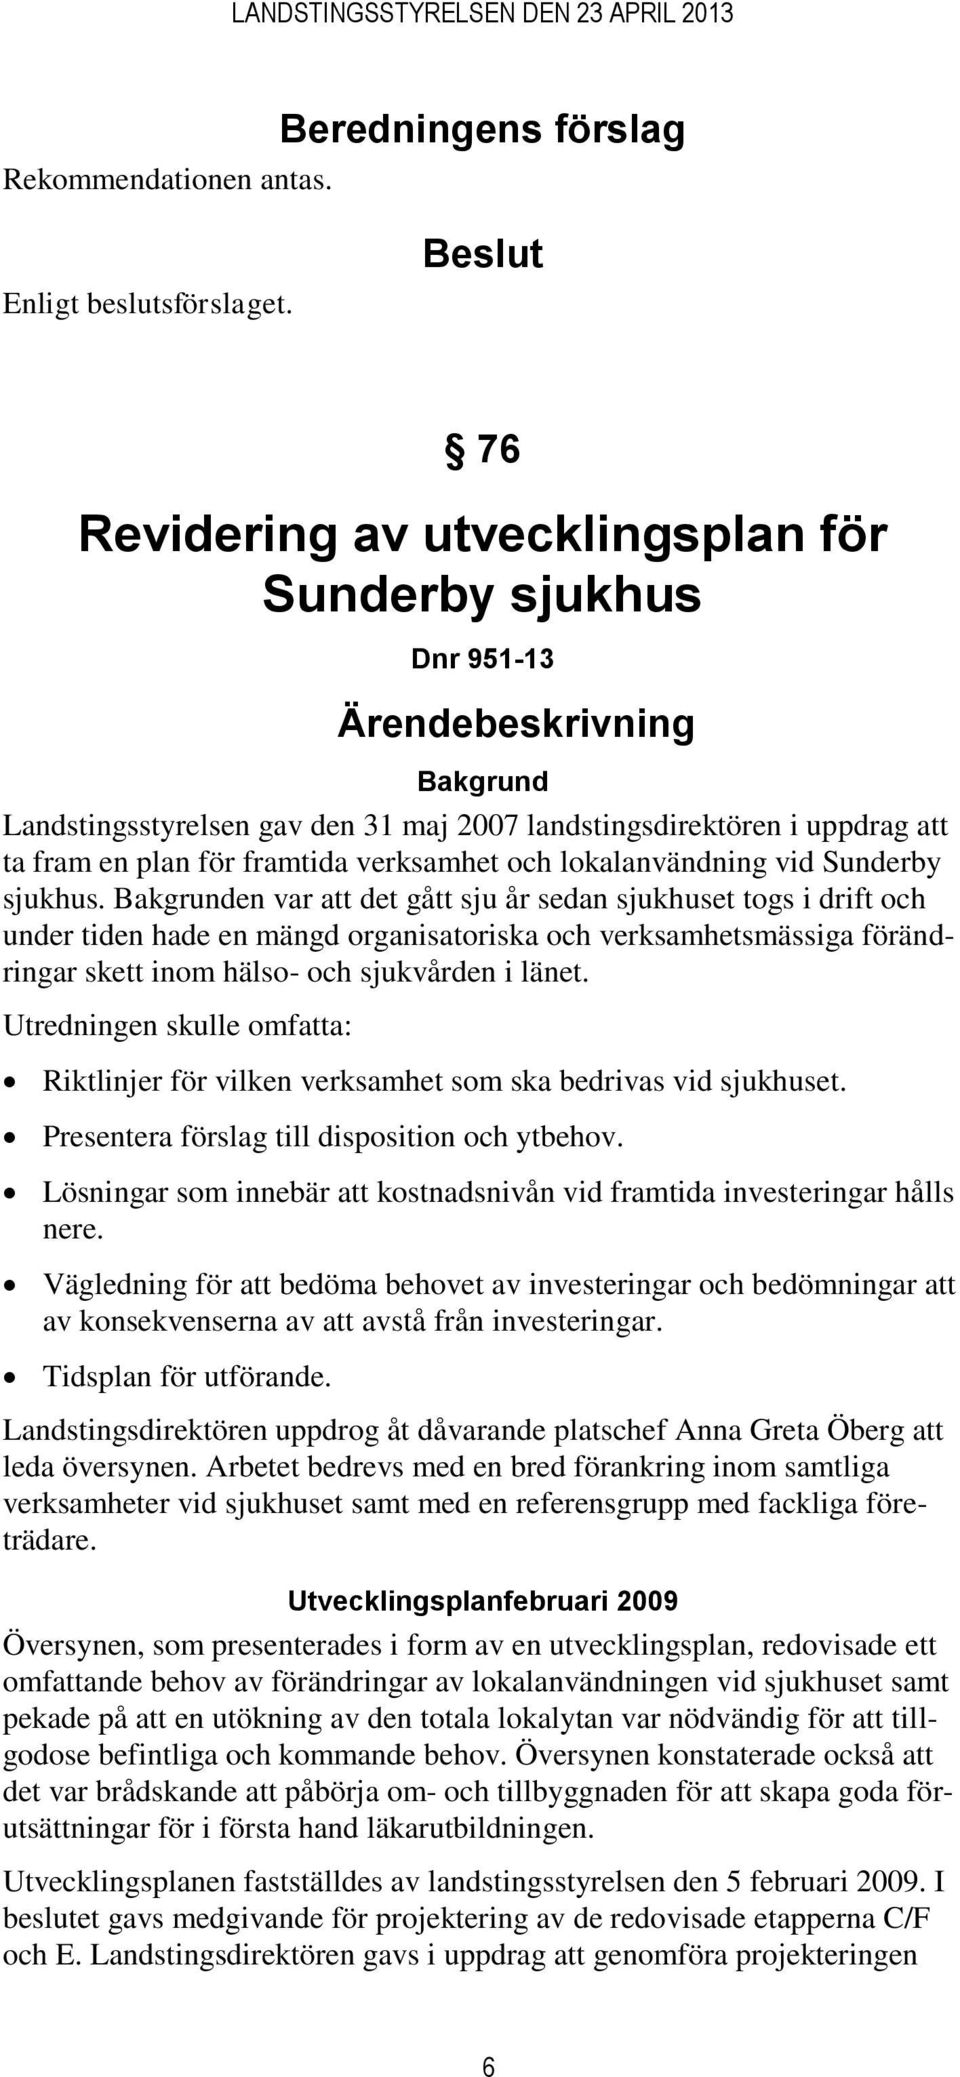 framtida verksamhet och lokalanvändning vid Sunderby sjukhus.